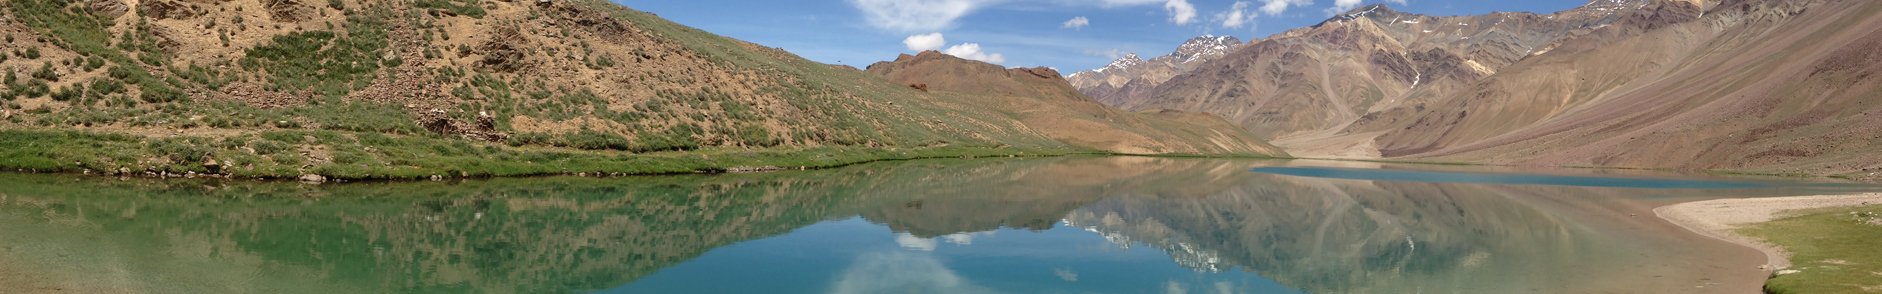 Parashar Lake Himachal Pradesh